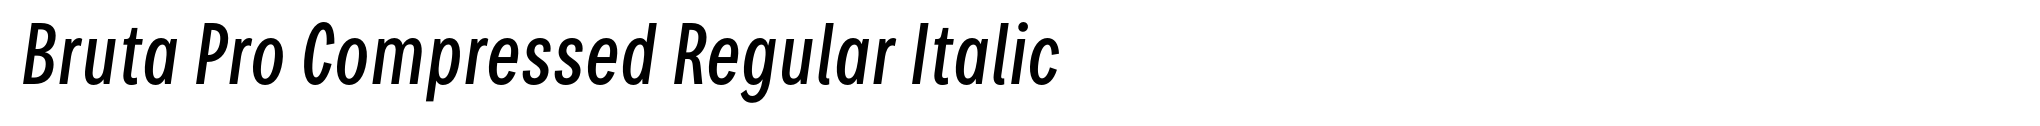 Bruta Pro Compressed Regular Italic image